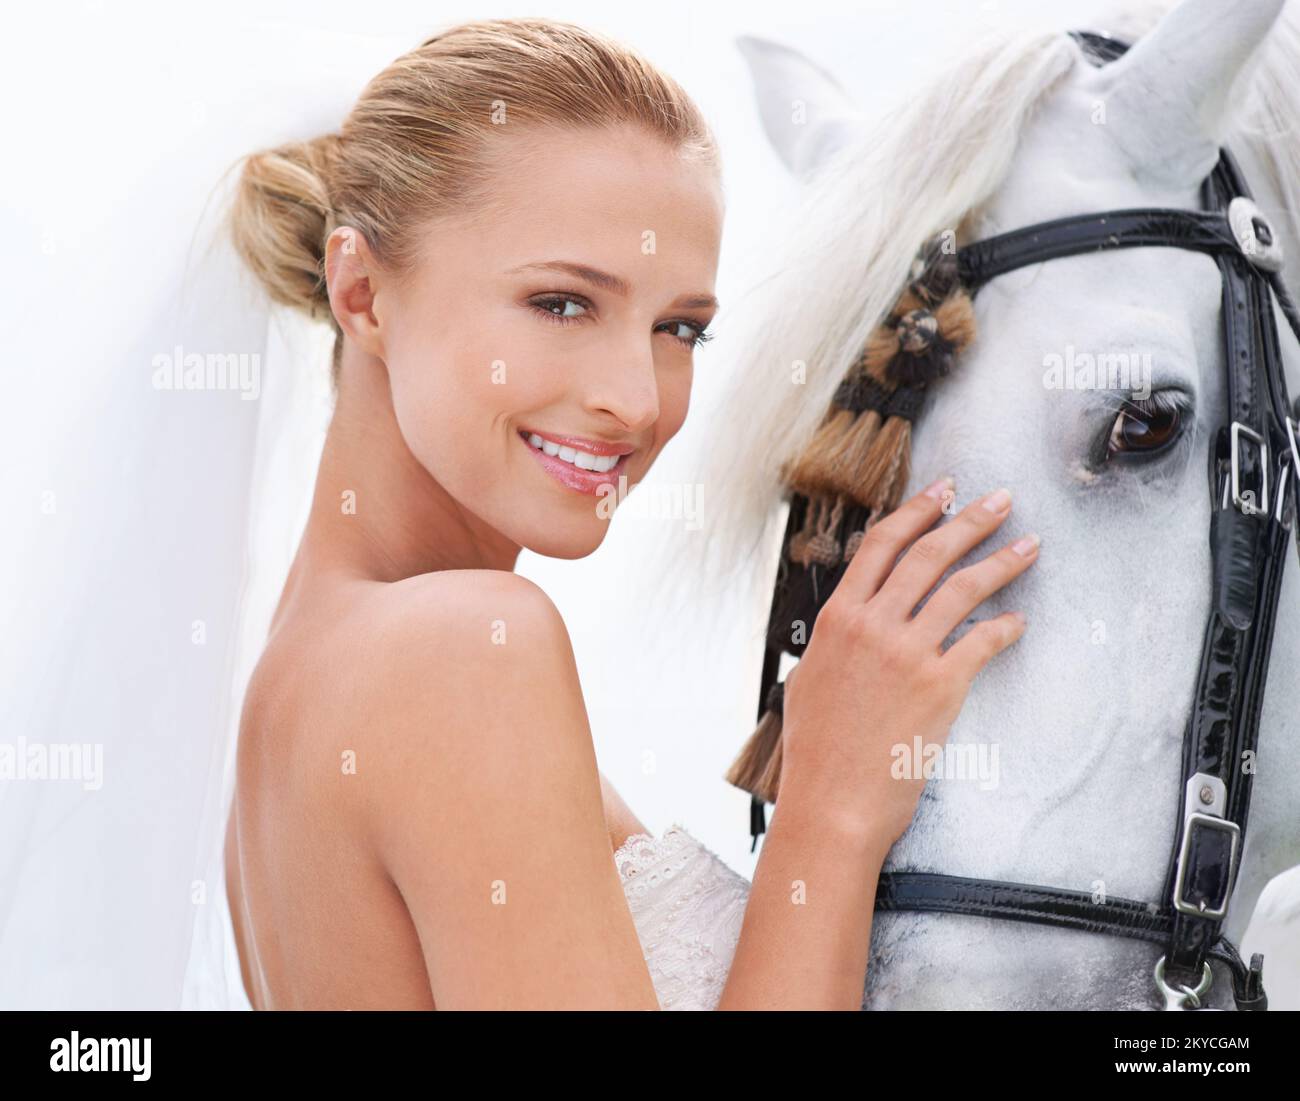 Elle est entrée dans son mariage à cheval. Une jeune mariée attrayante dehors avec son cheval. Banque D'Images